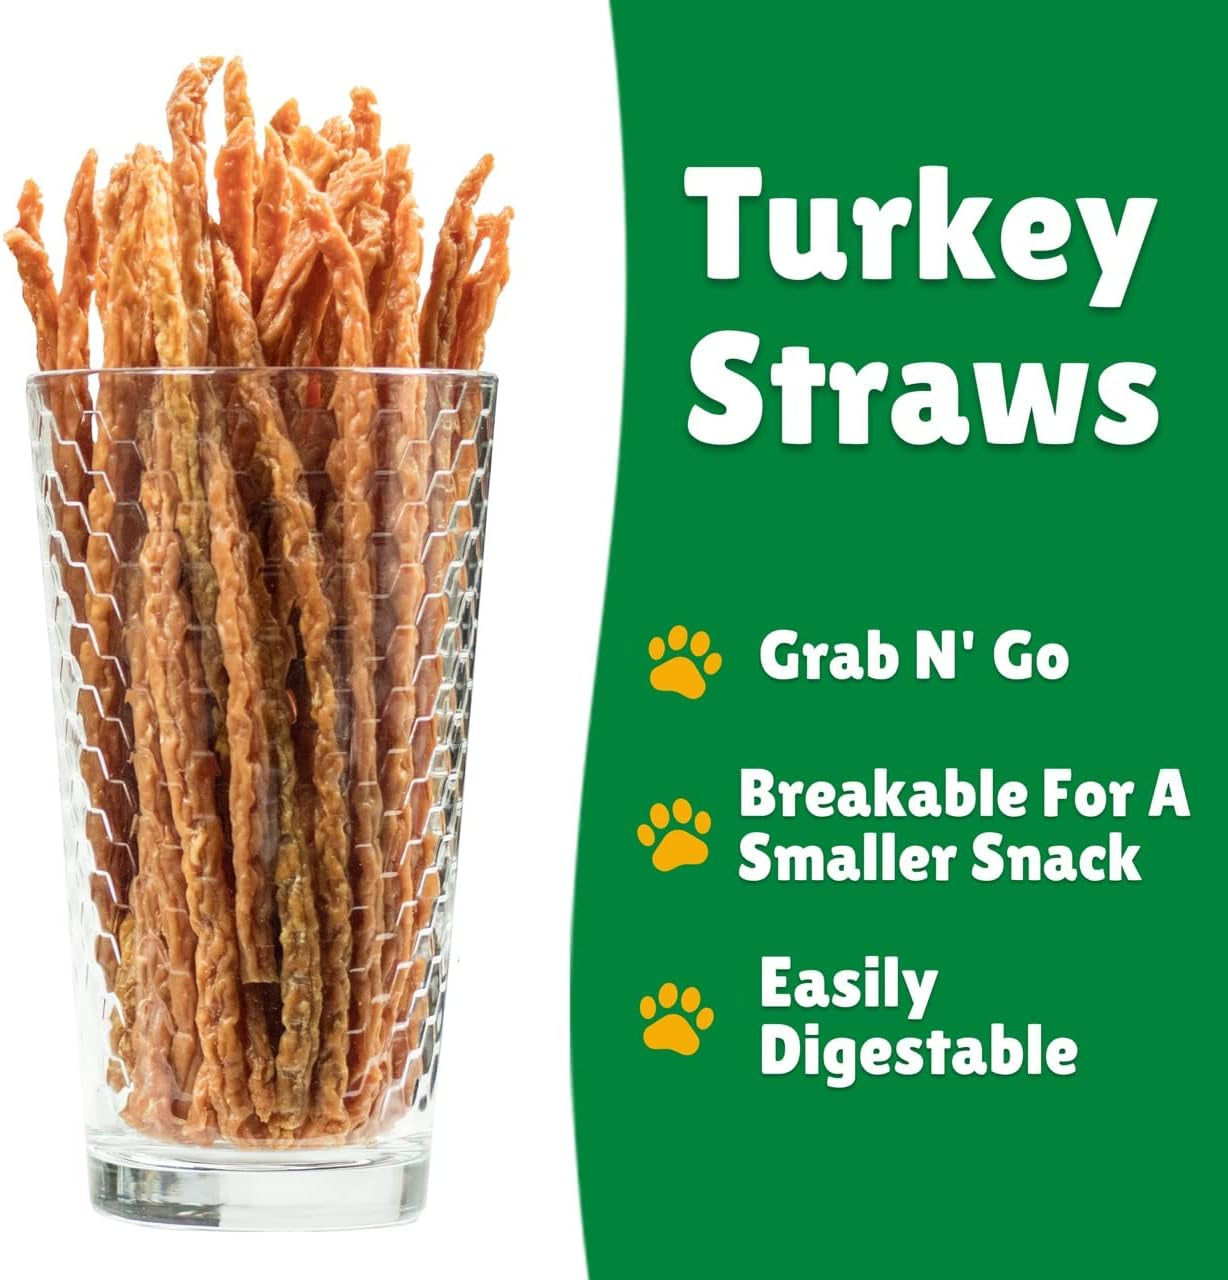 Turkey Jerky Straws – All Natural Turkey Dog Treats, Dog Chews Made with Restaurant Quality Turkey (13 Oz)